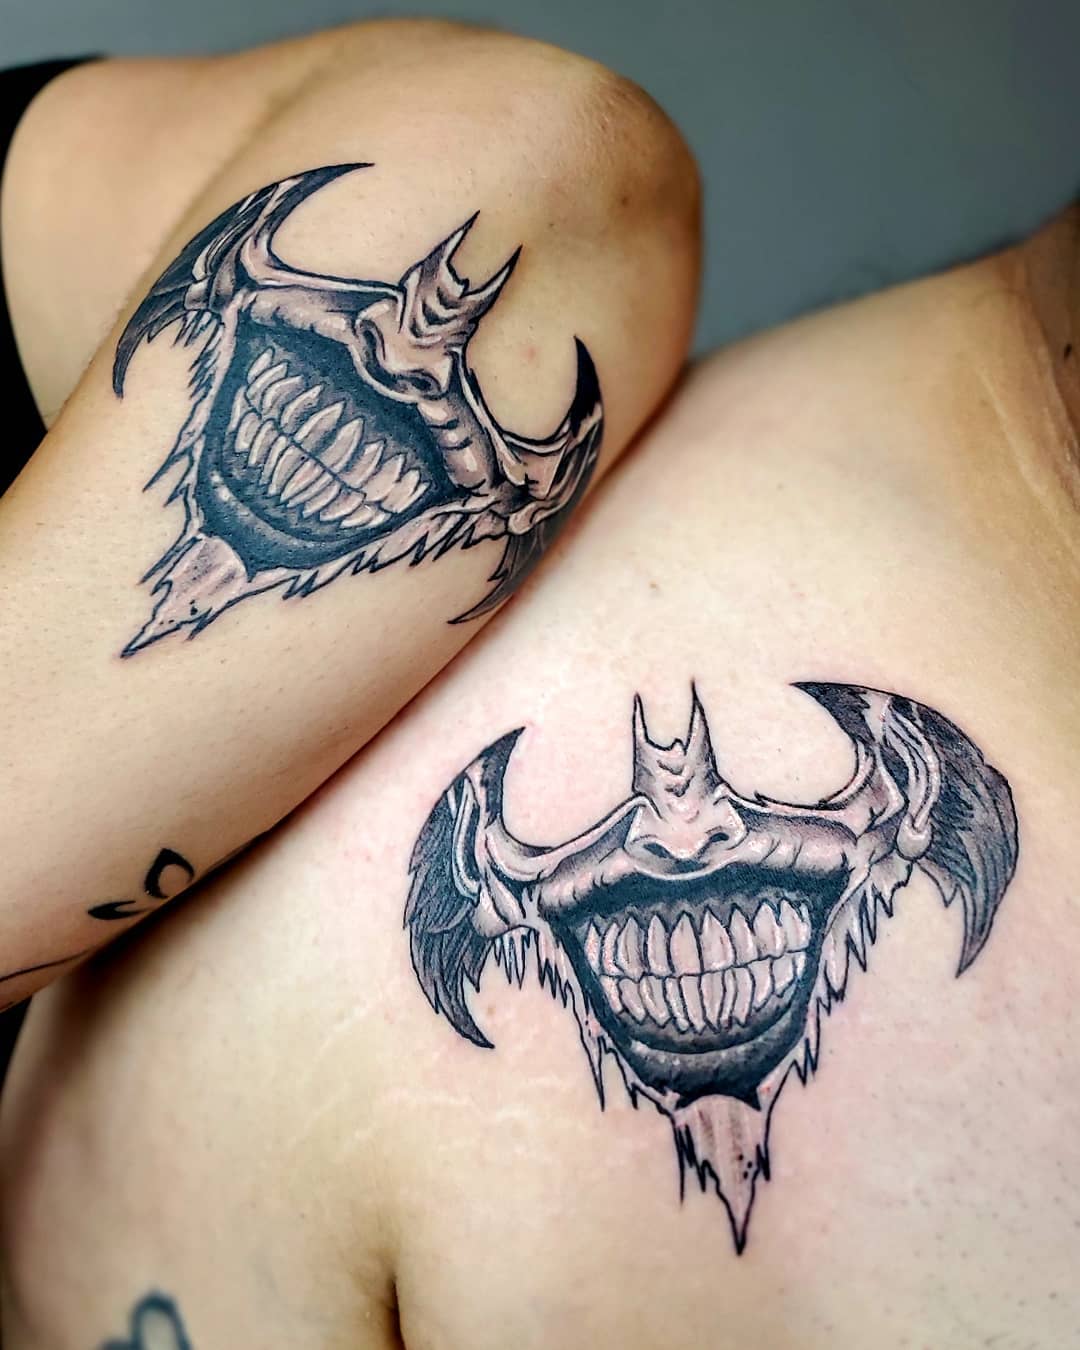 Batman tattoo - Tattoo Designs for Women - Batman tattoo